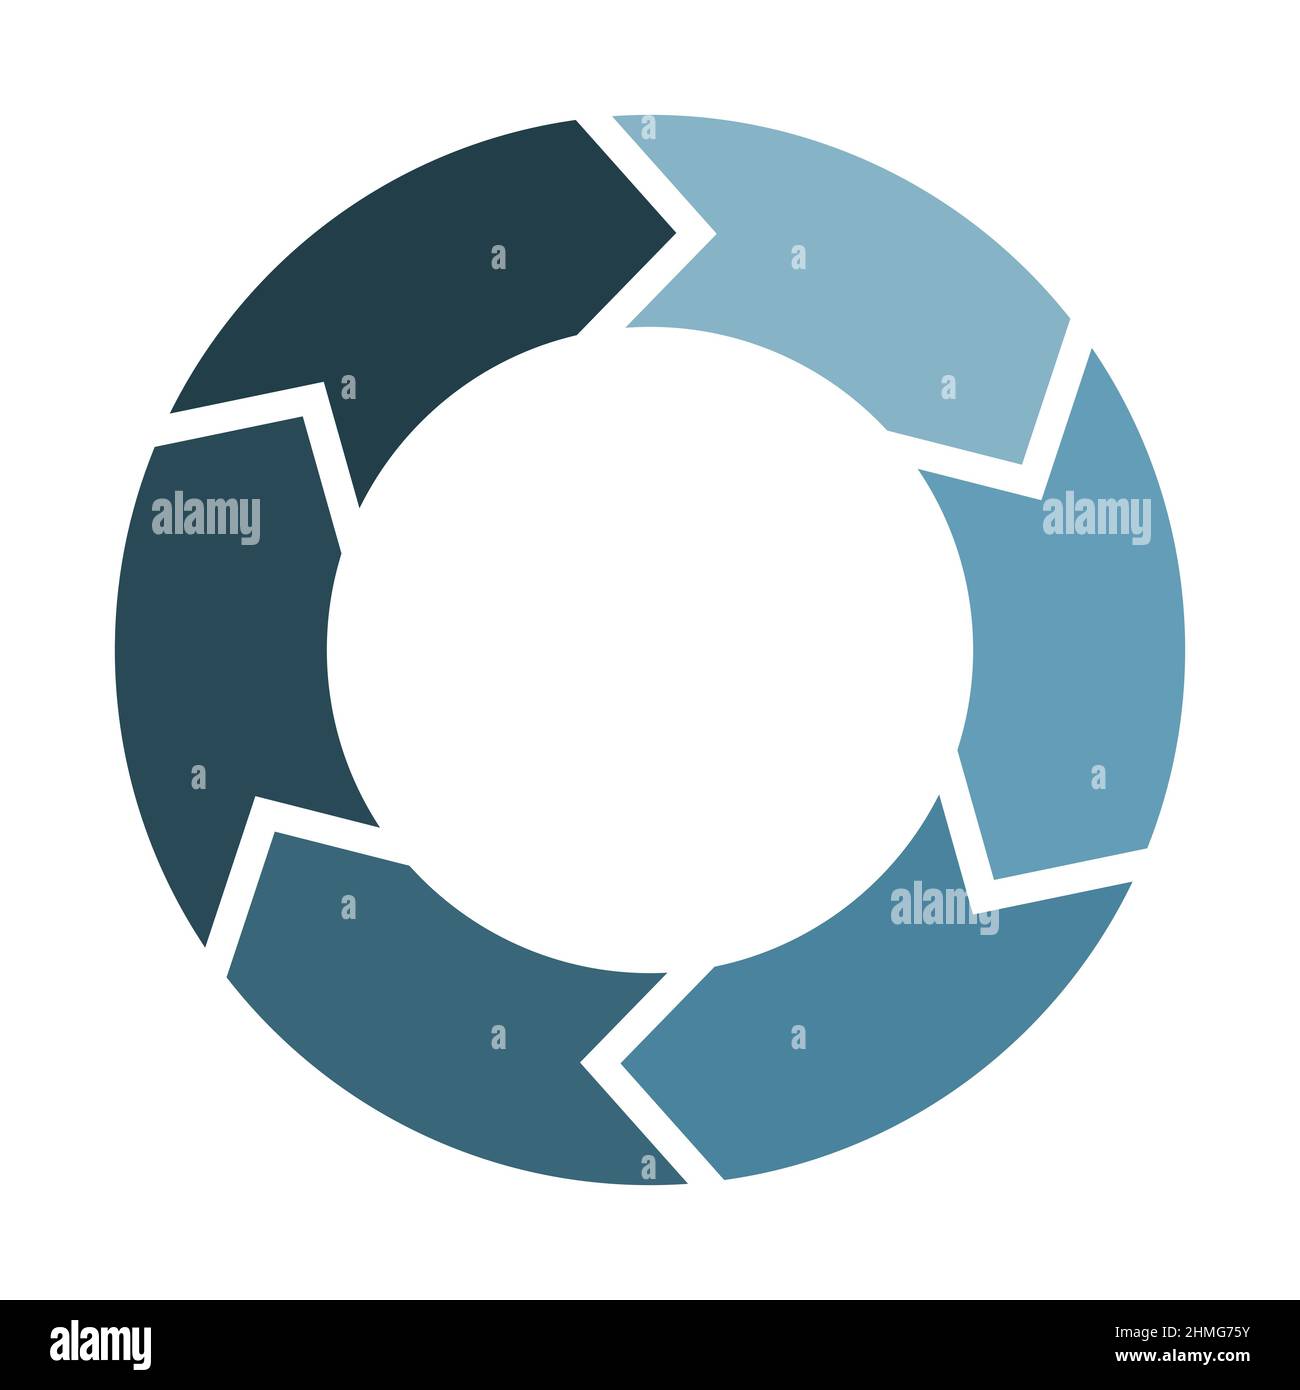 Kreis mit 6 Pfeilen erneuern und aktualisieren. Sechs Elemente bilden ein kreisförmiges Symbol. Blaue Farbe Infografik Diagramm Vektor Illustration. Stock Vektor